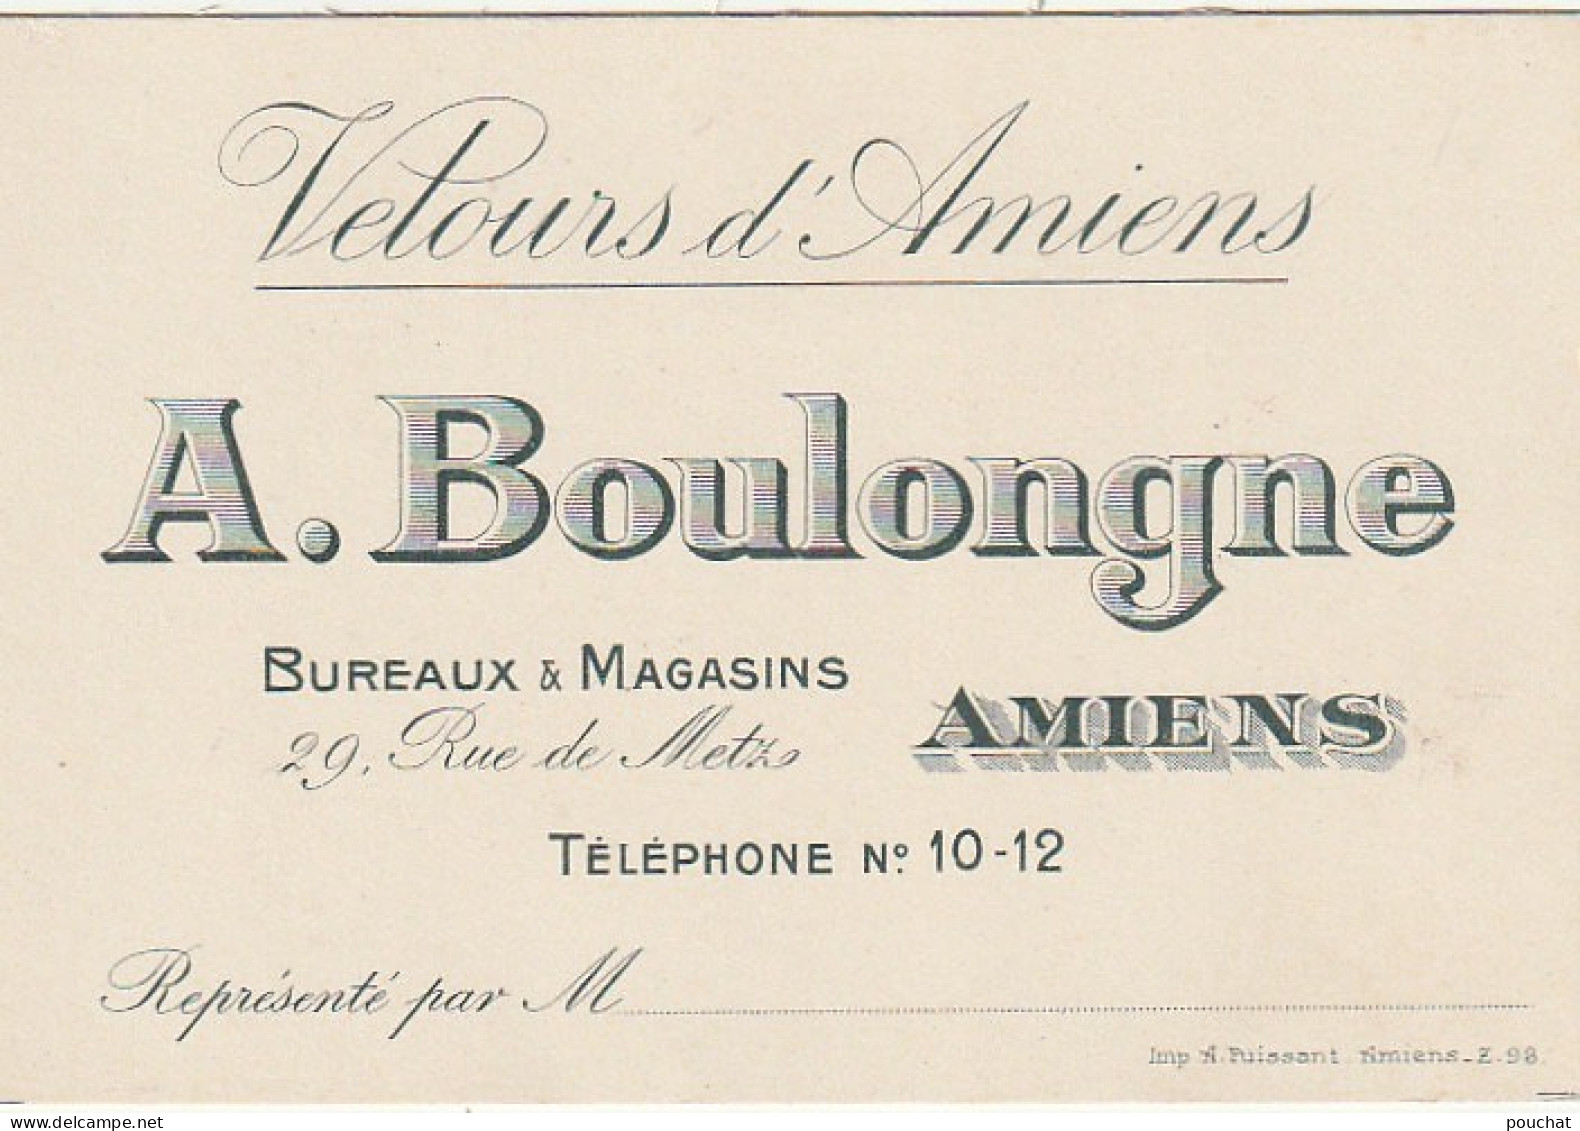 KO 6- (80) " VELOURS D' AMIENS " - A . BOULONGNE - BUREAUX & MAGASINS , RUE DE METZ , AMIENS- CARTE DE VISITE - 2 SCANS - Visitenkarten